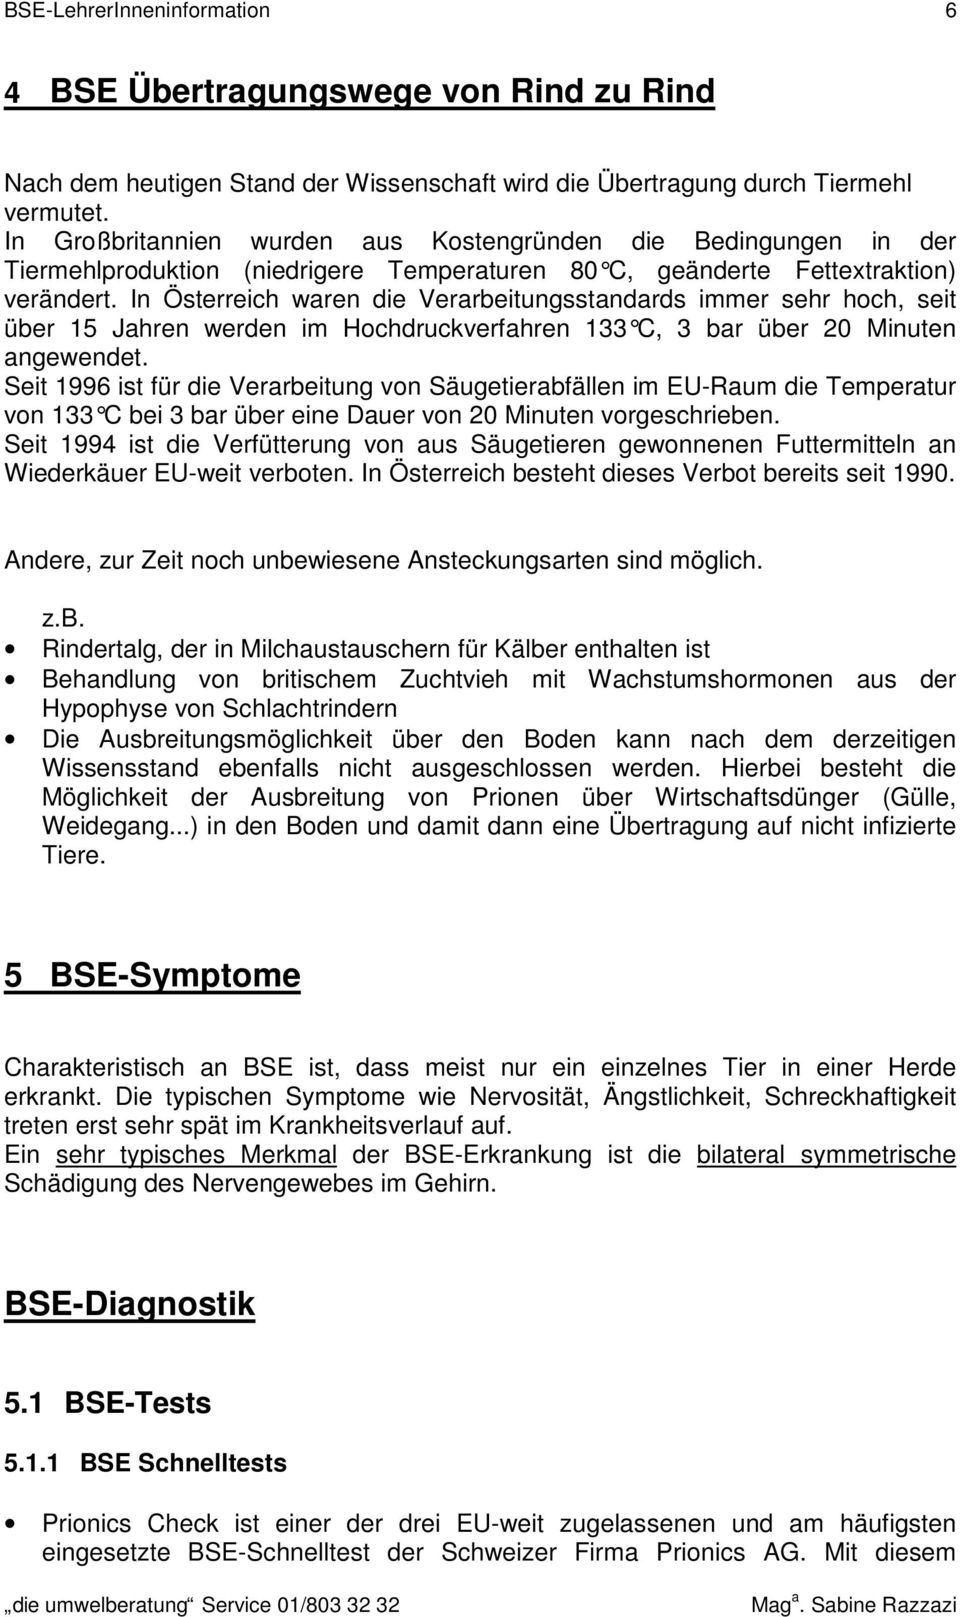 In Österreich waren die Verarbeitungsstandards immer sehr hoch, seit über 15 Jahren werden im Hochdruckverfahren 133 C, 3 bar über 20 Minuten angewendet.